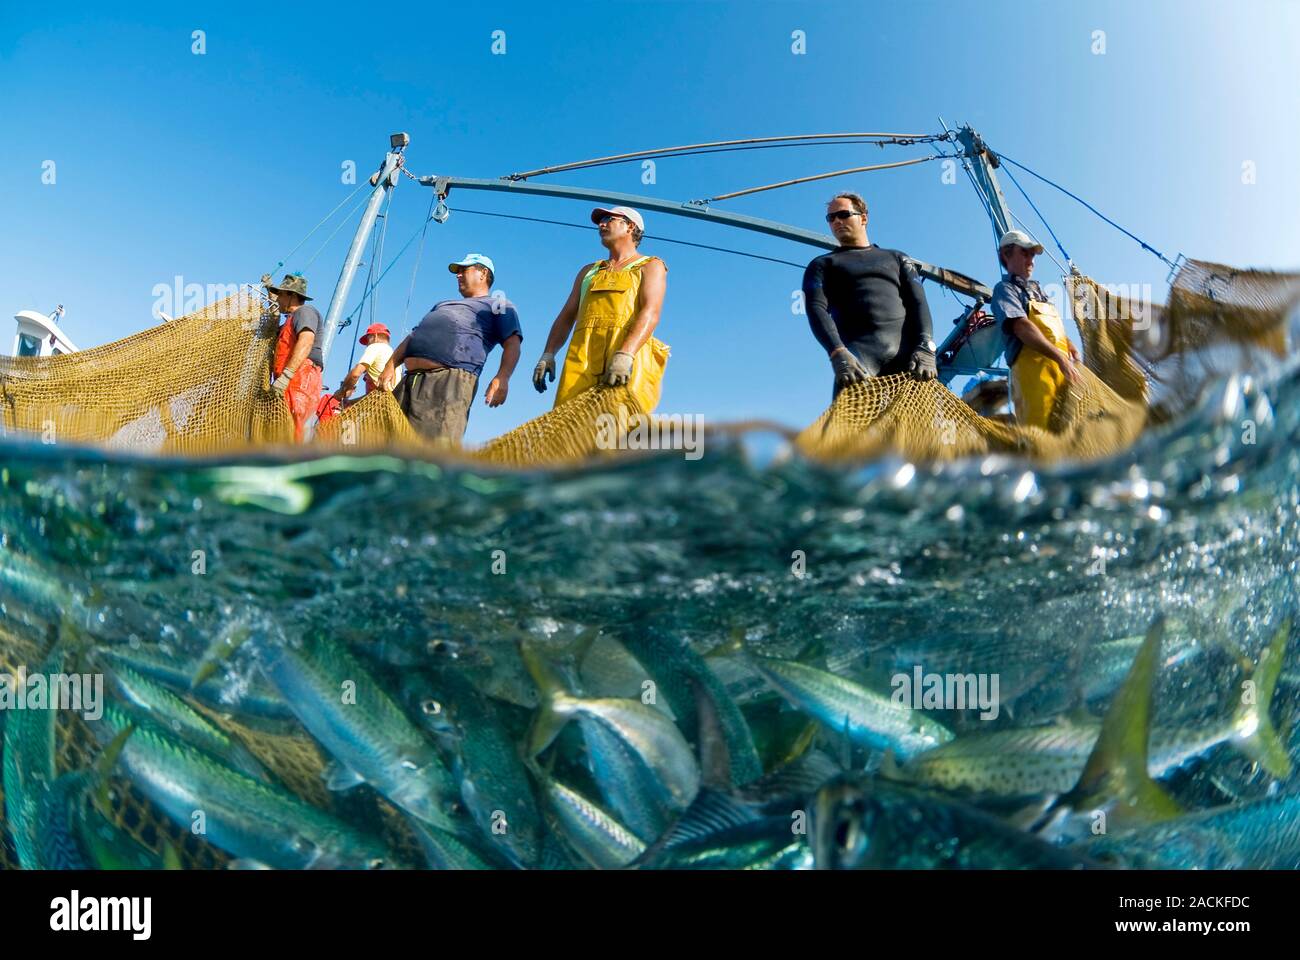 Промыслы в океане. Рыболовство. Рыбная ловля в океане. Промышленное рыболовство. Рыбный промысел Испании.